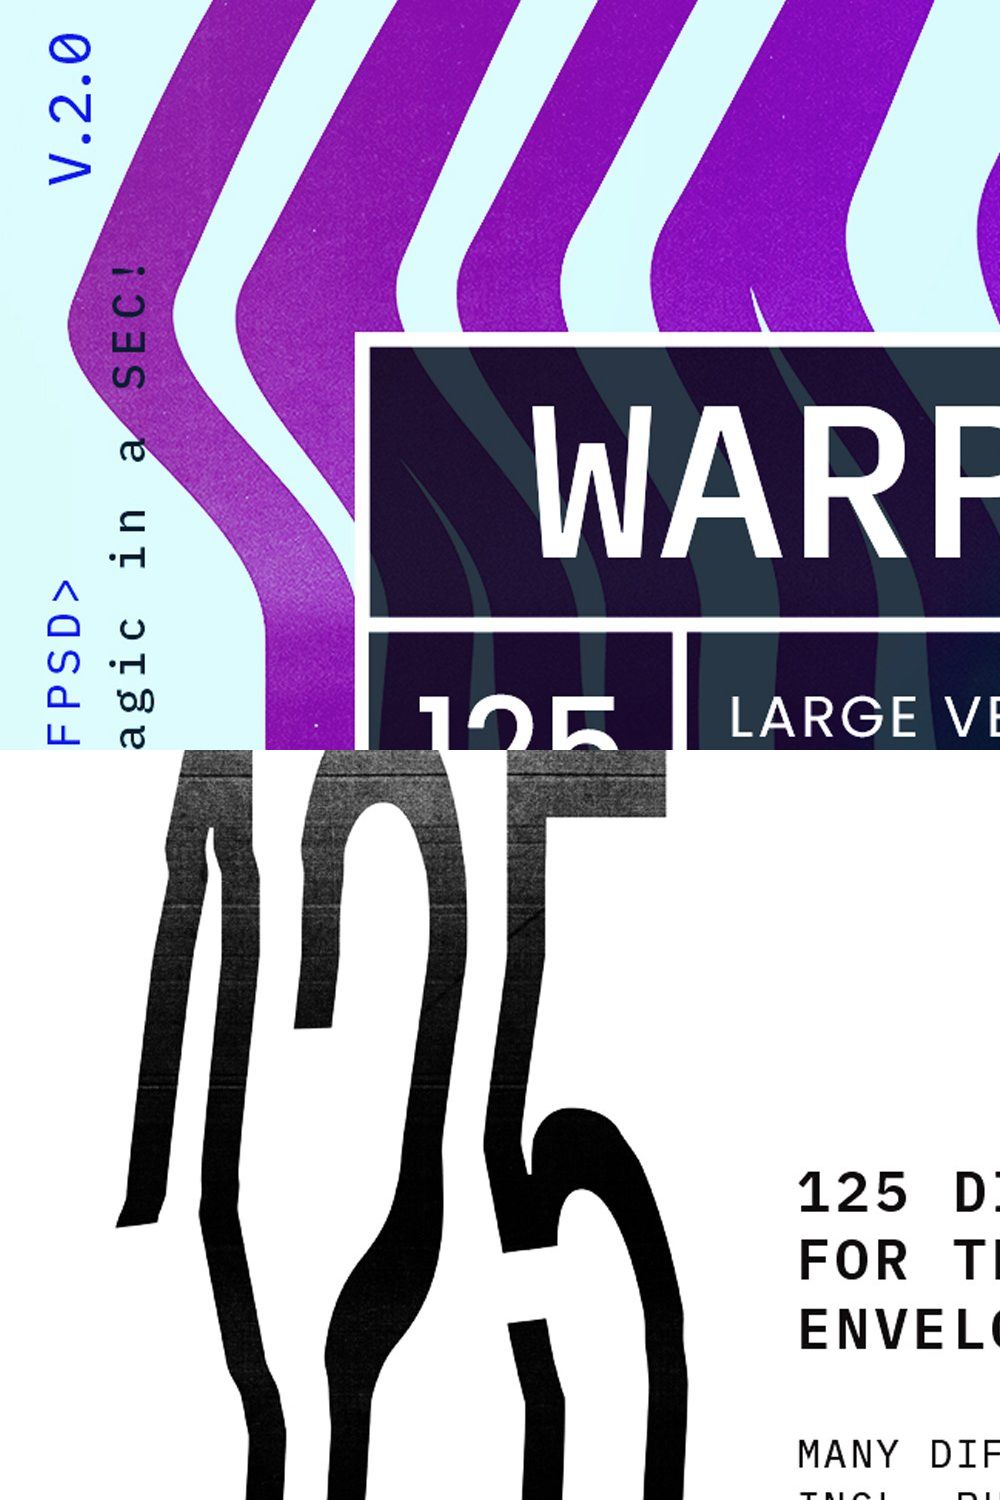 WARP V.2.0 pinterest preview image.